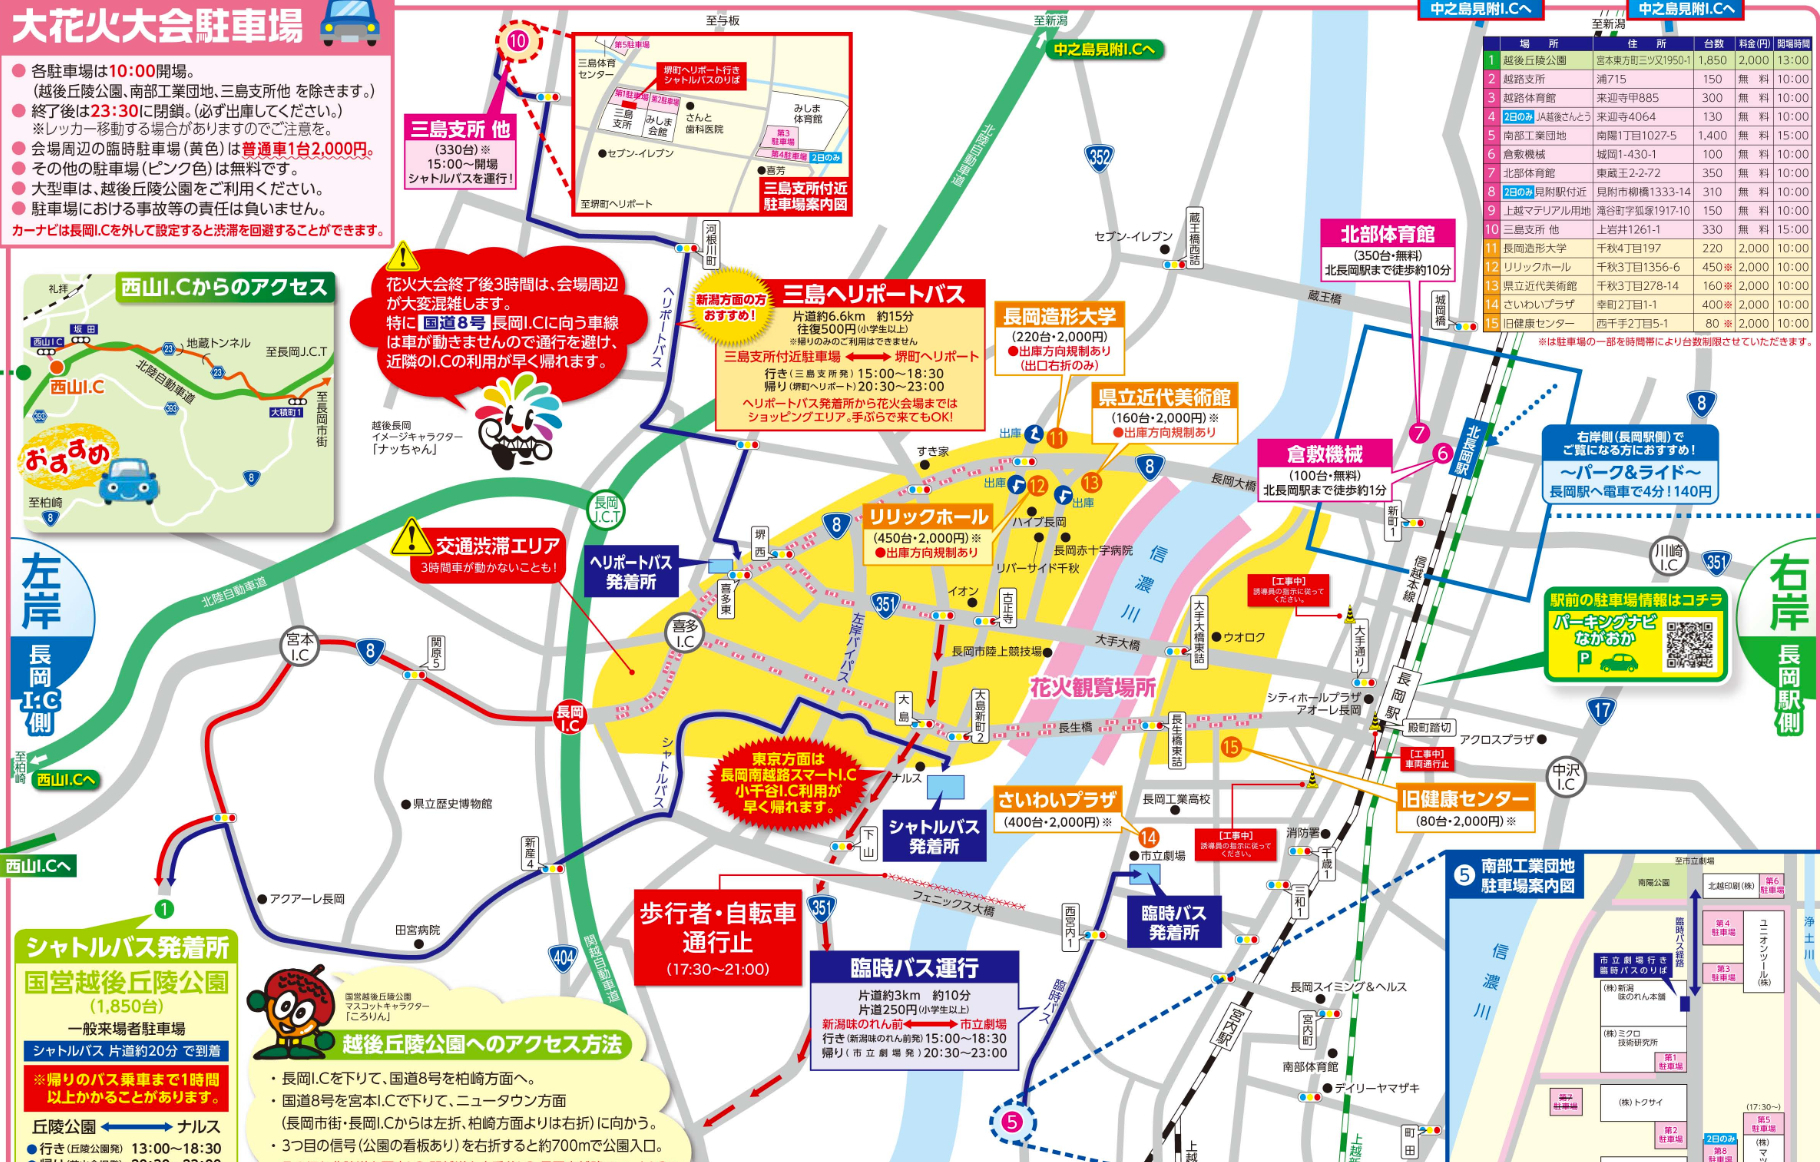 長岡花火大会 16 交通規制 通行止め 駐車場や臨時シャトルバス